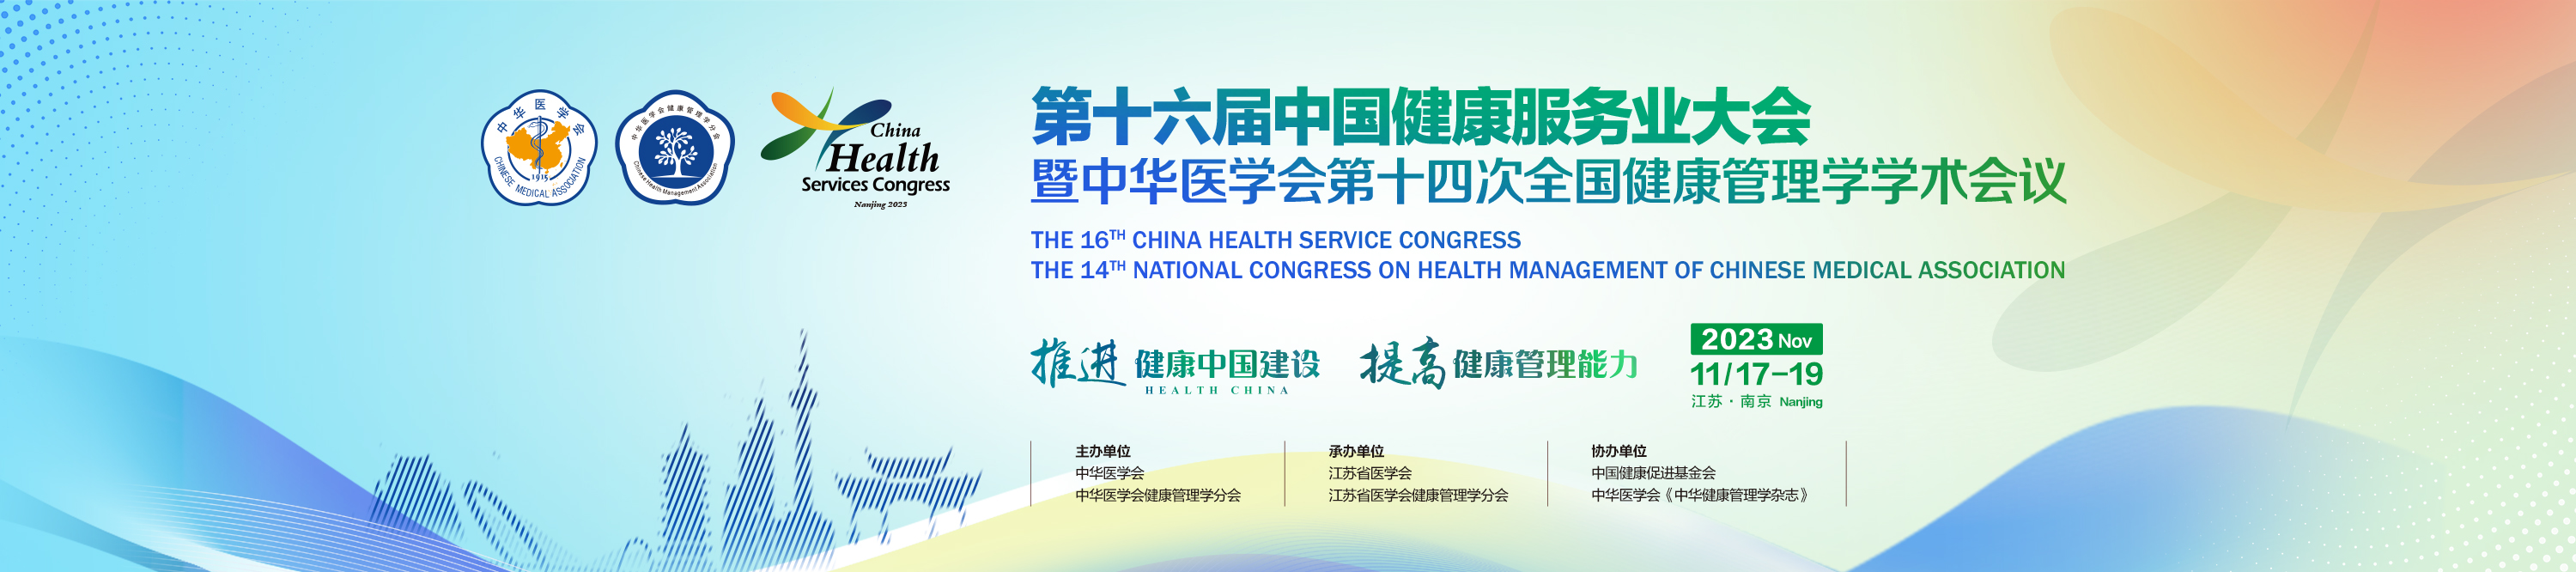 第十六届中国健康服务业大会暨中华医学会第十四次全国健康管理学学术会议